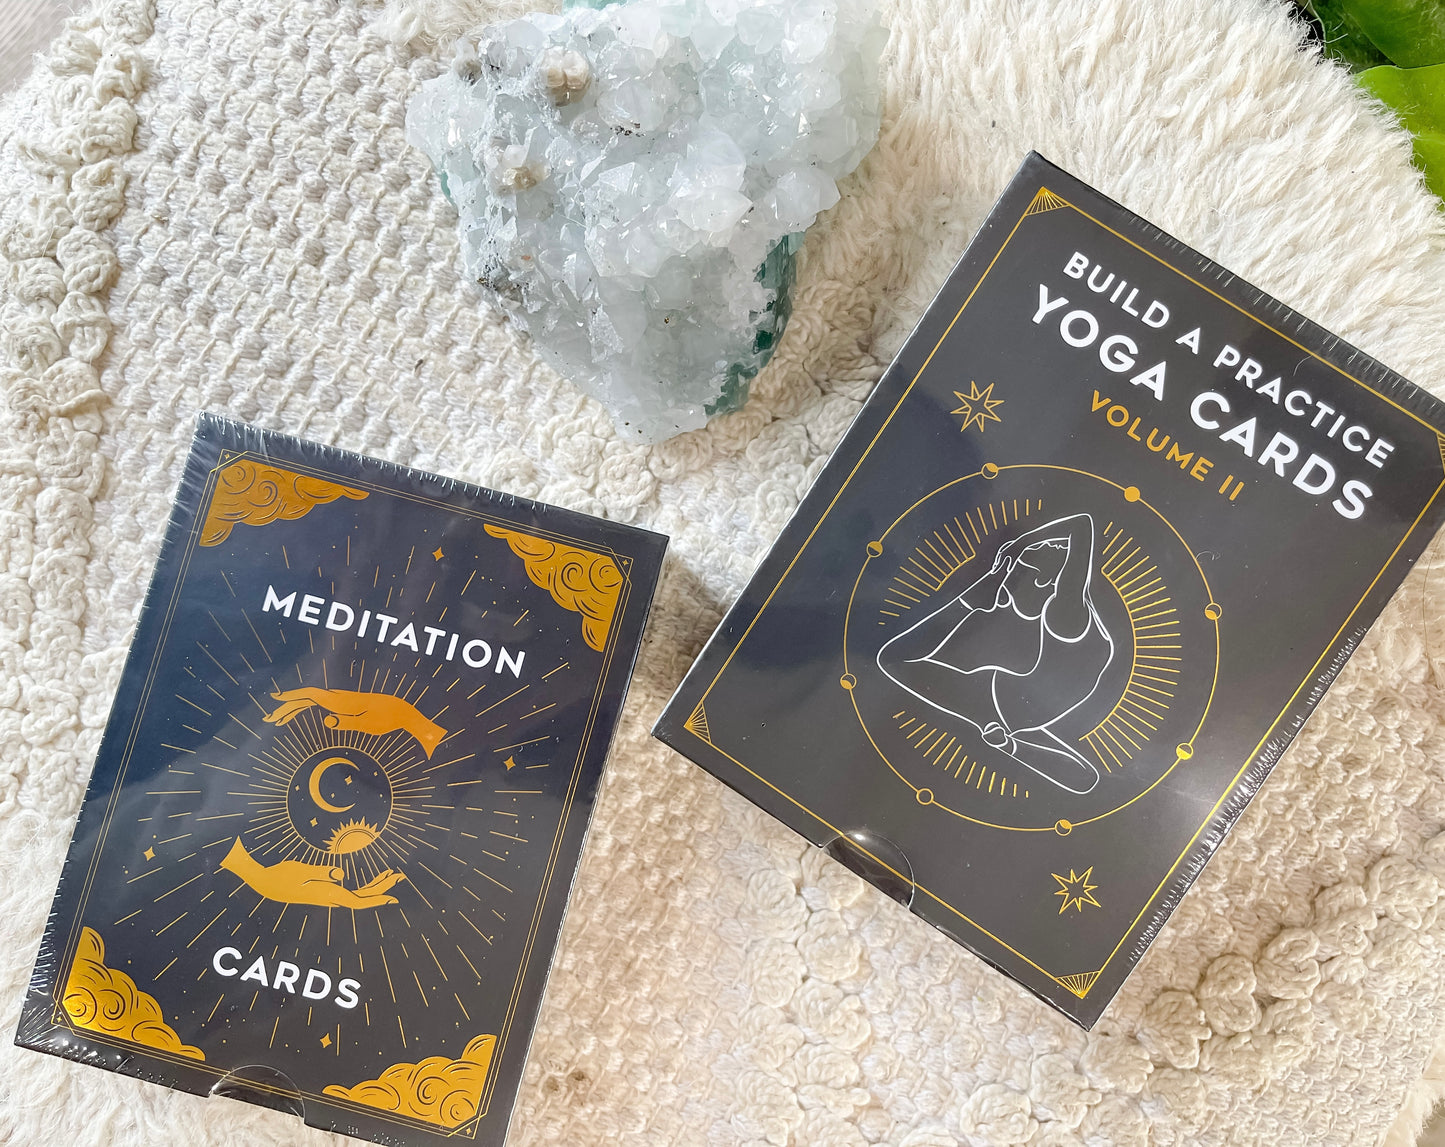 Meditation cards